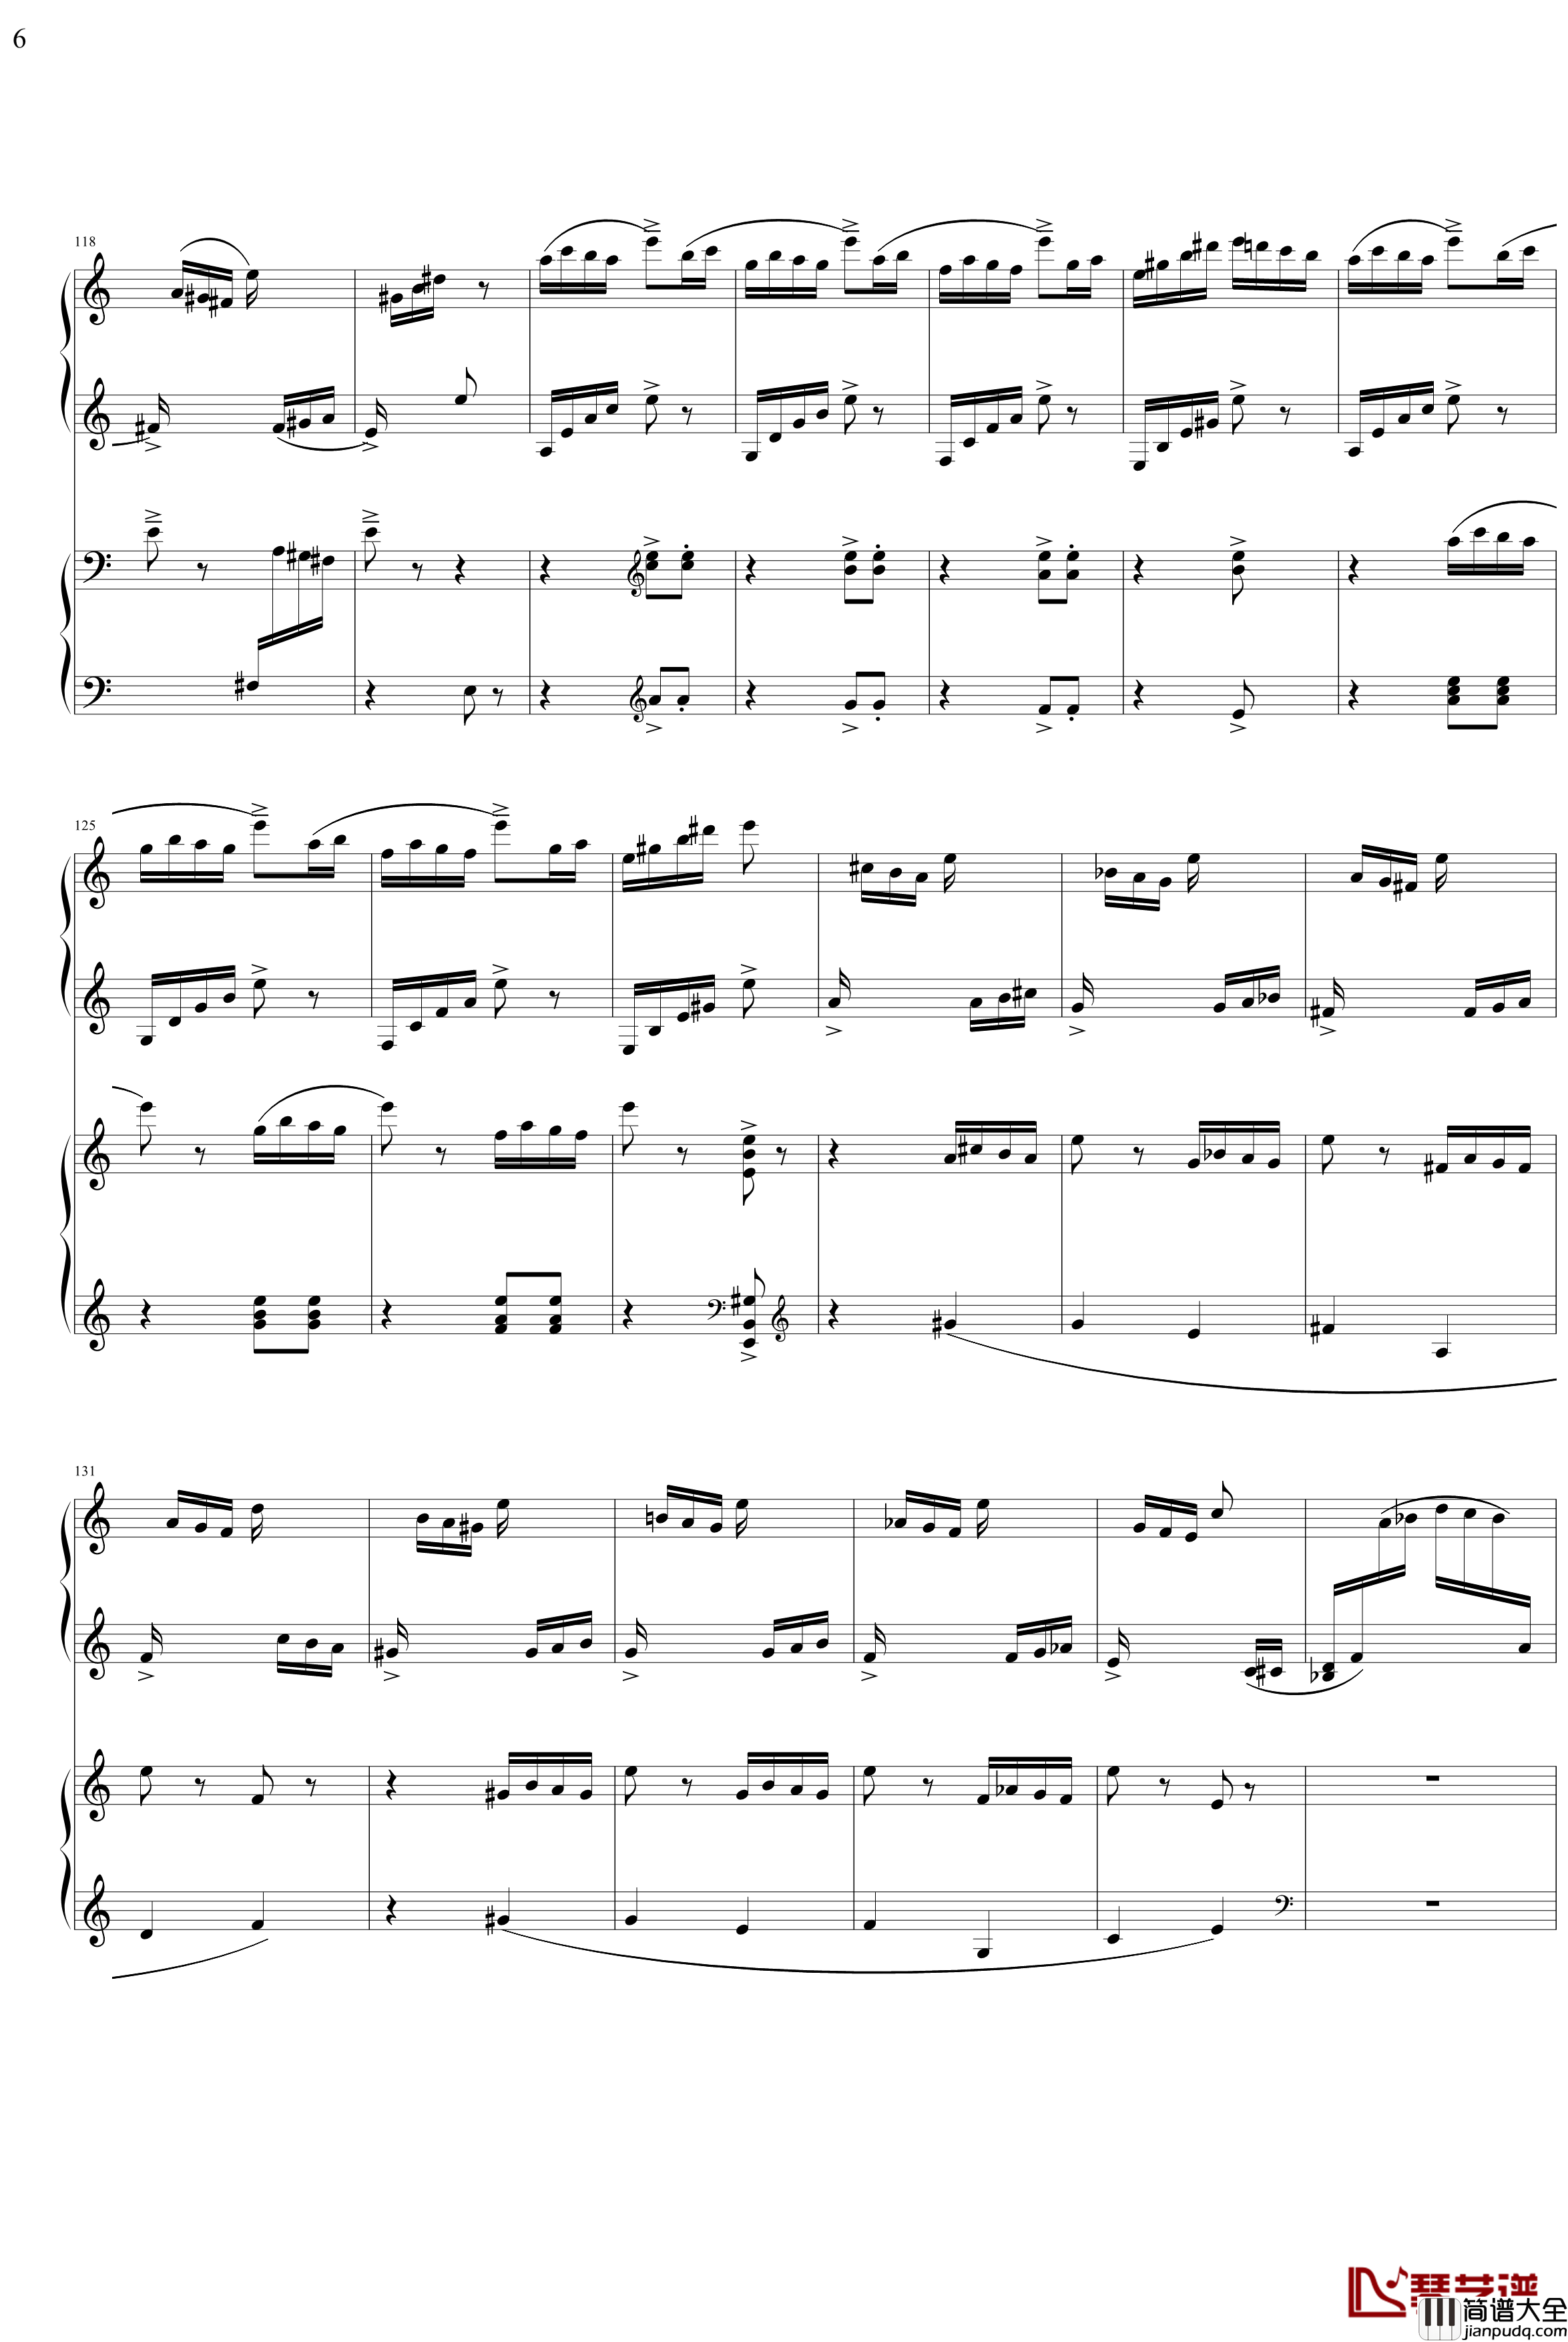 帕格尼主题狂想曲钢琴谱_1~10变奏_拉赫马尼若夫